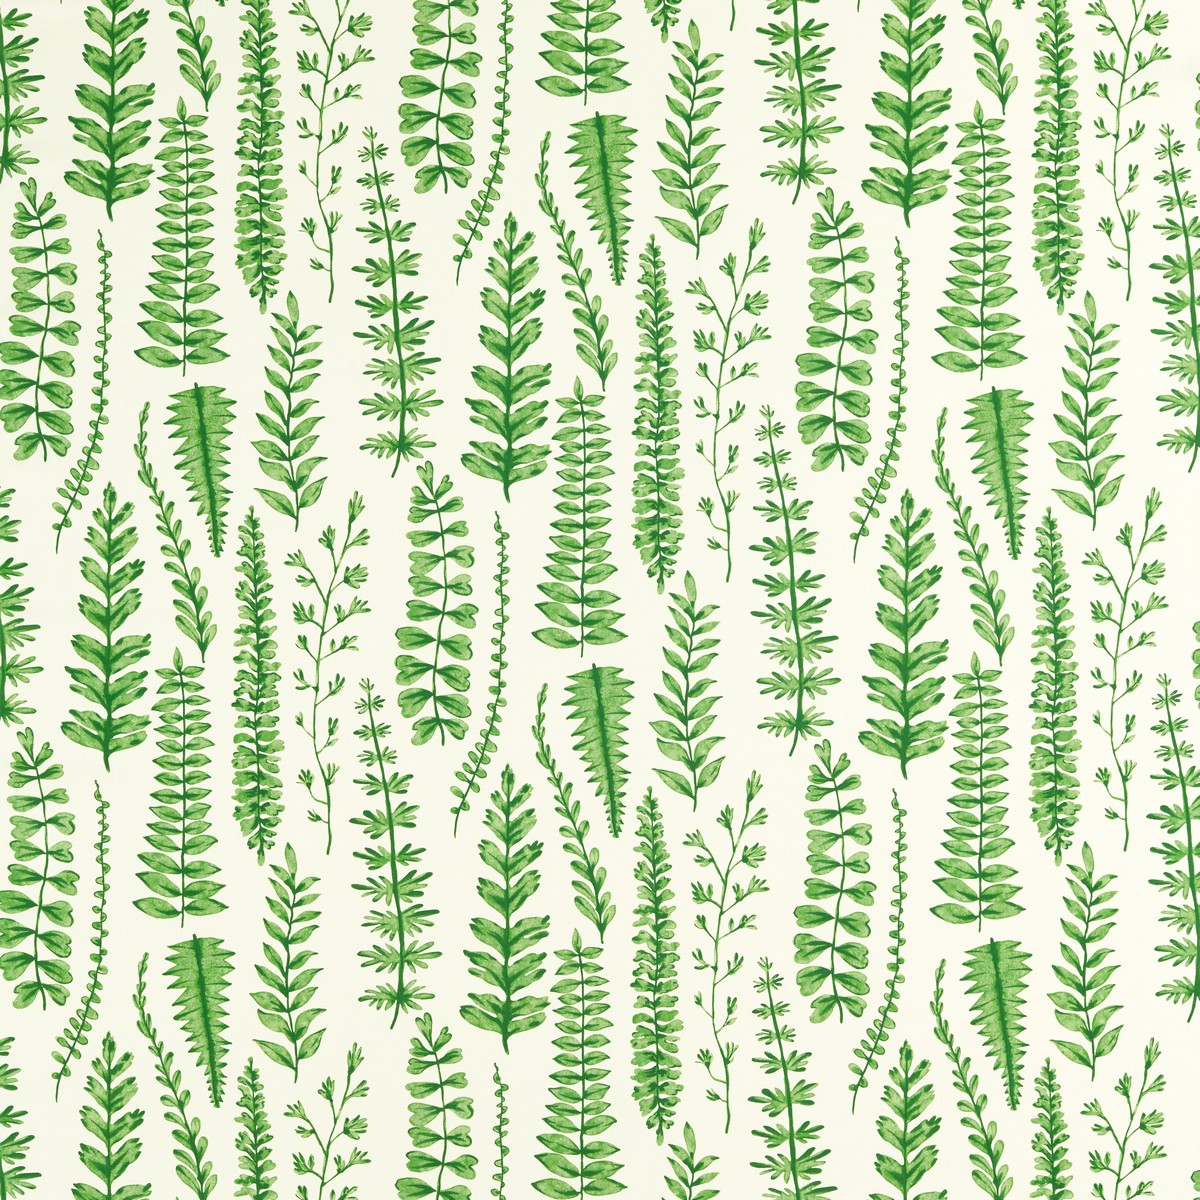 Ferns Juniper Fabric by Scion